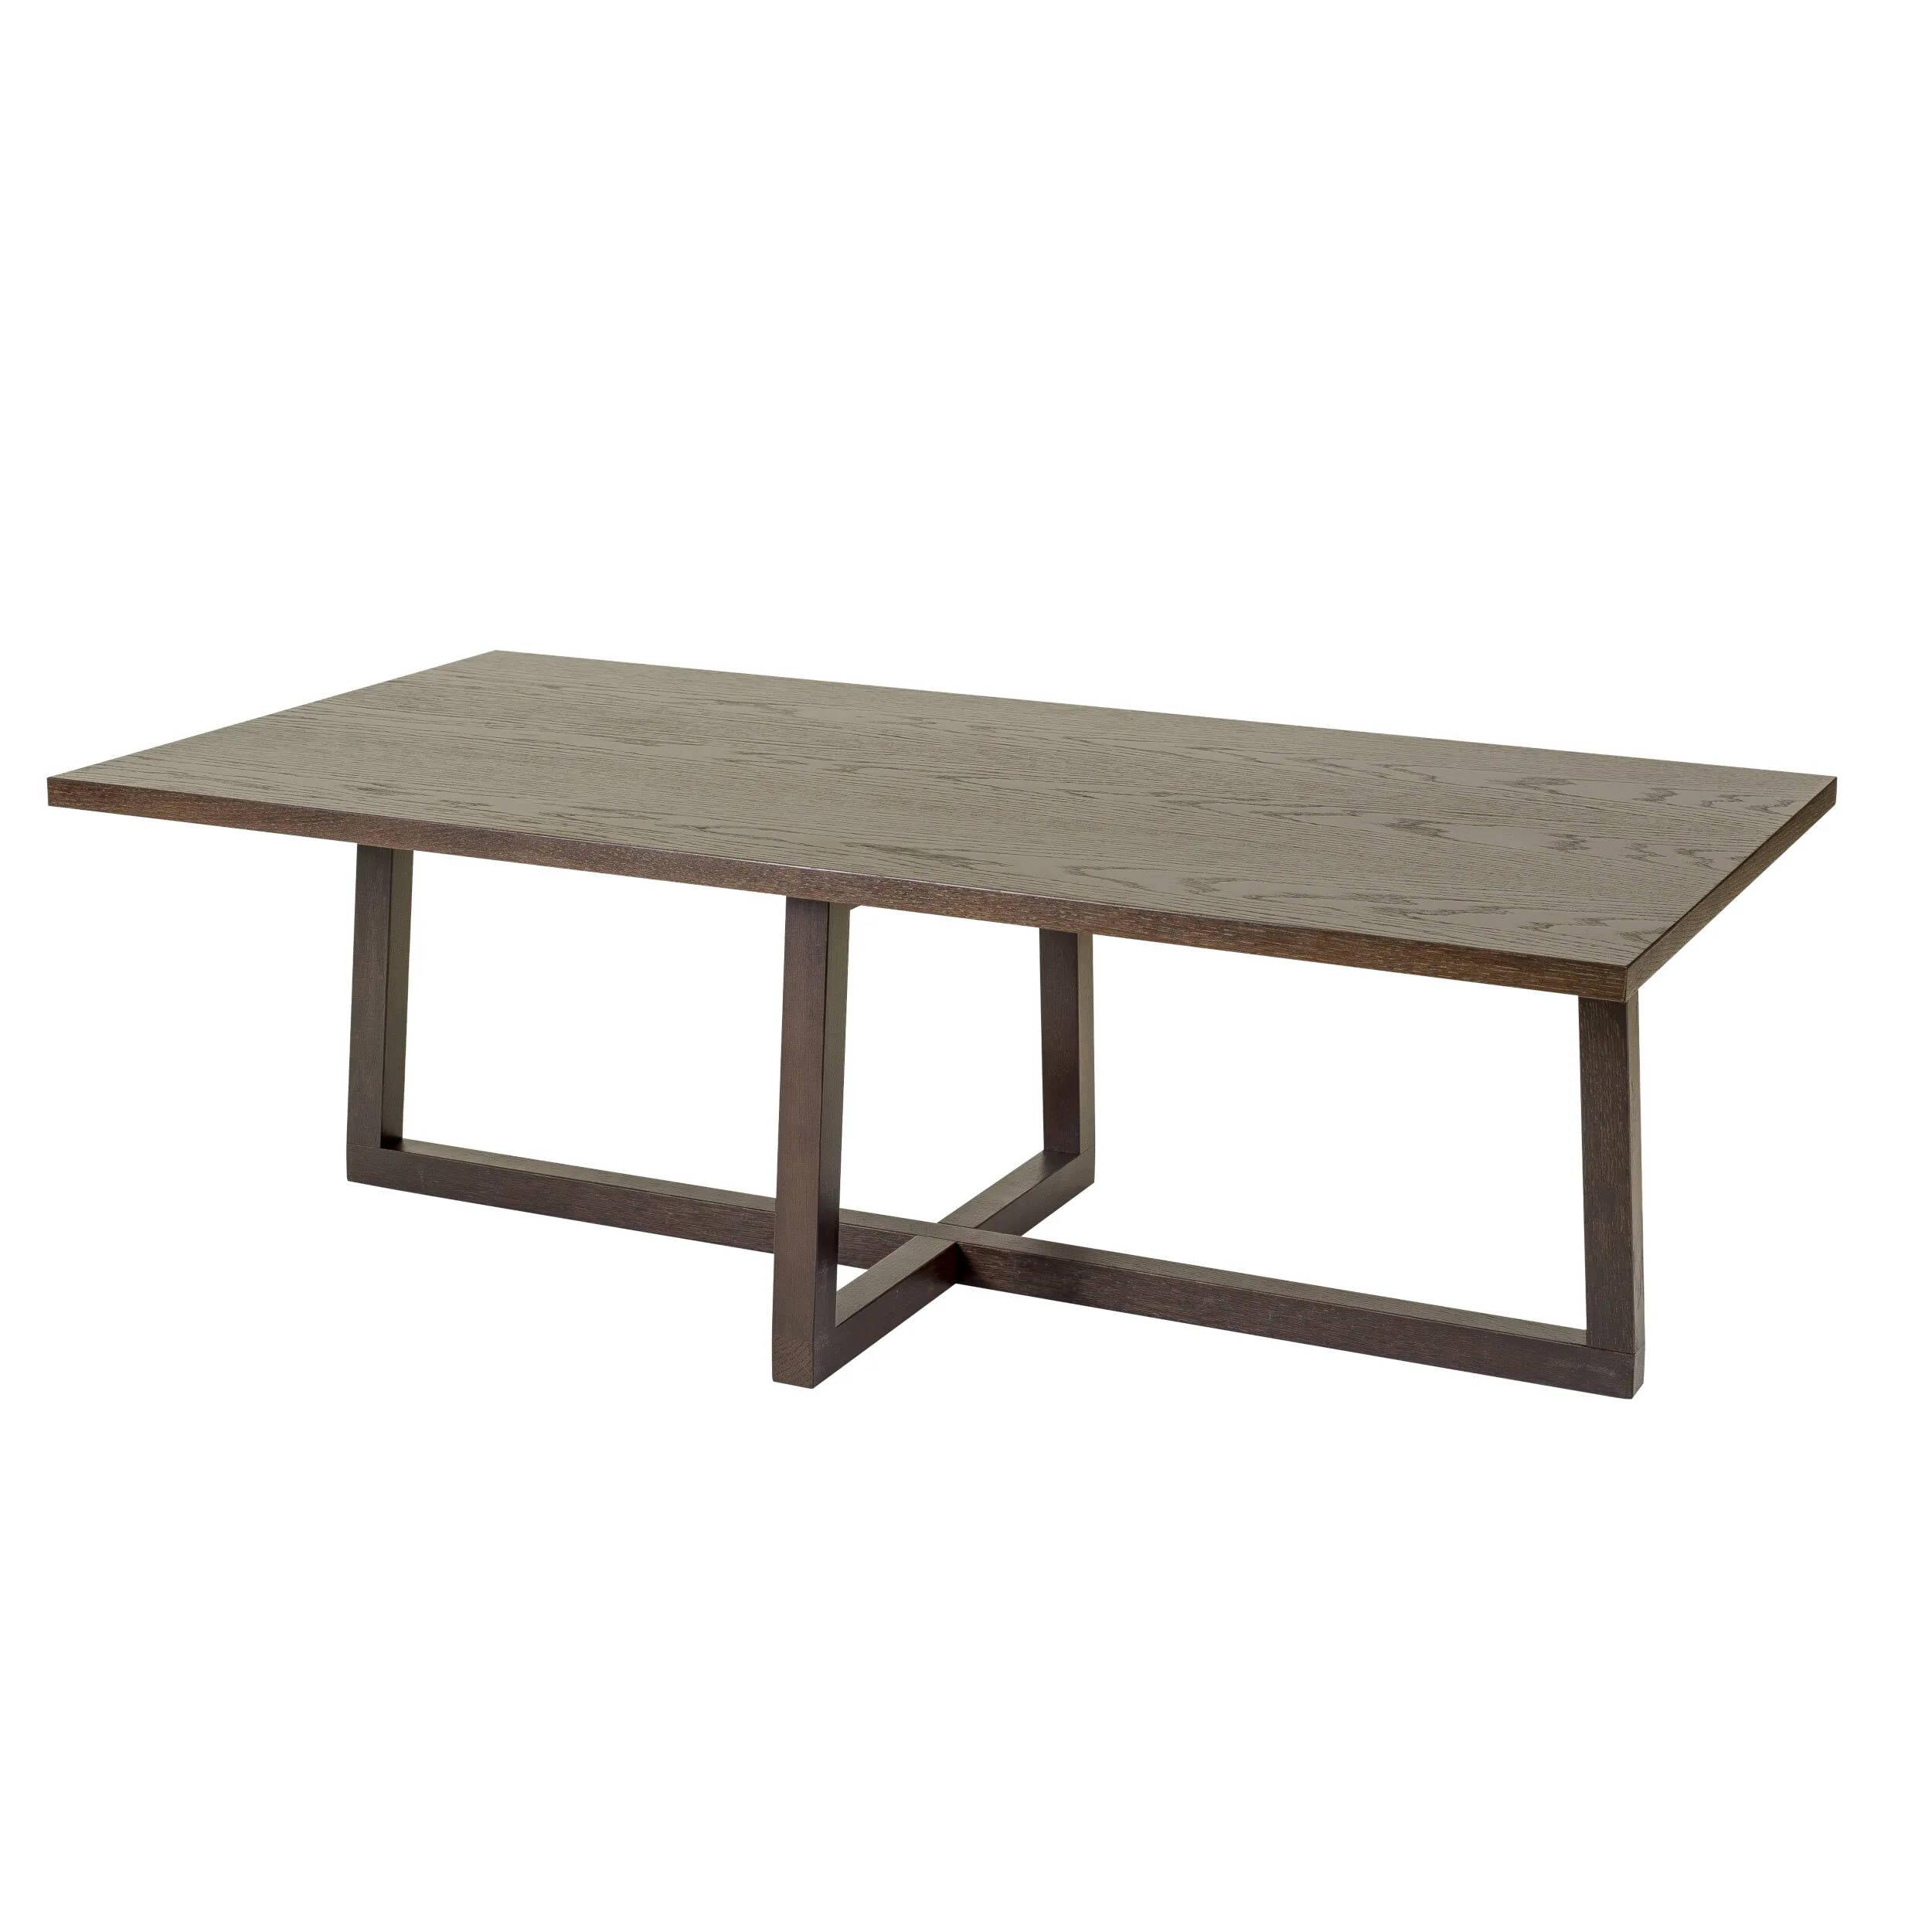 Tavolino Bexleyheath in legno ingegnerizzato e massiccio, dimensioni 115 x 60 x h38 cm, peso 14 Kg, finitura legno wengè